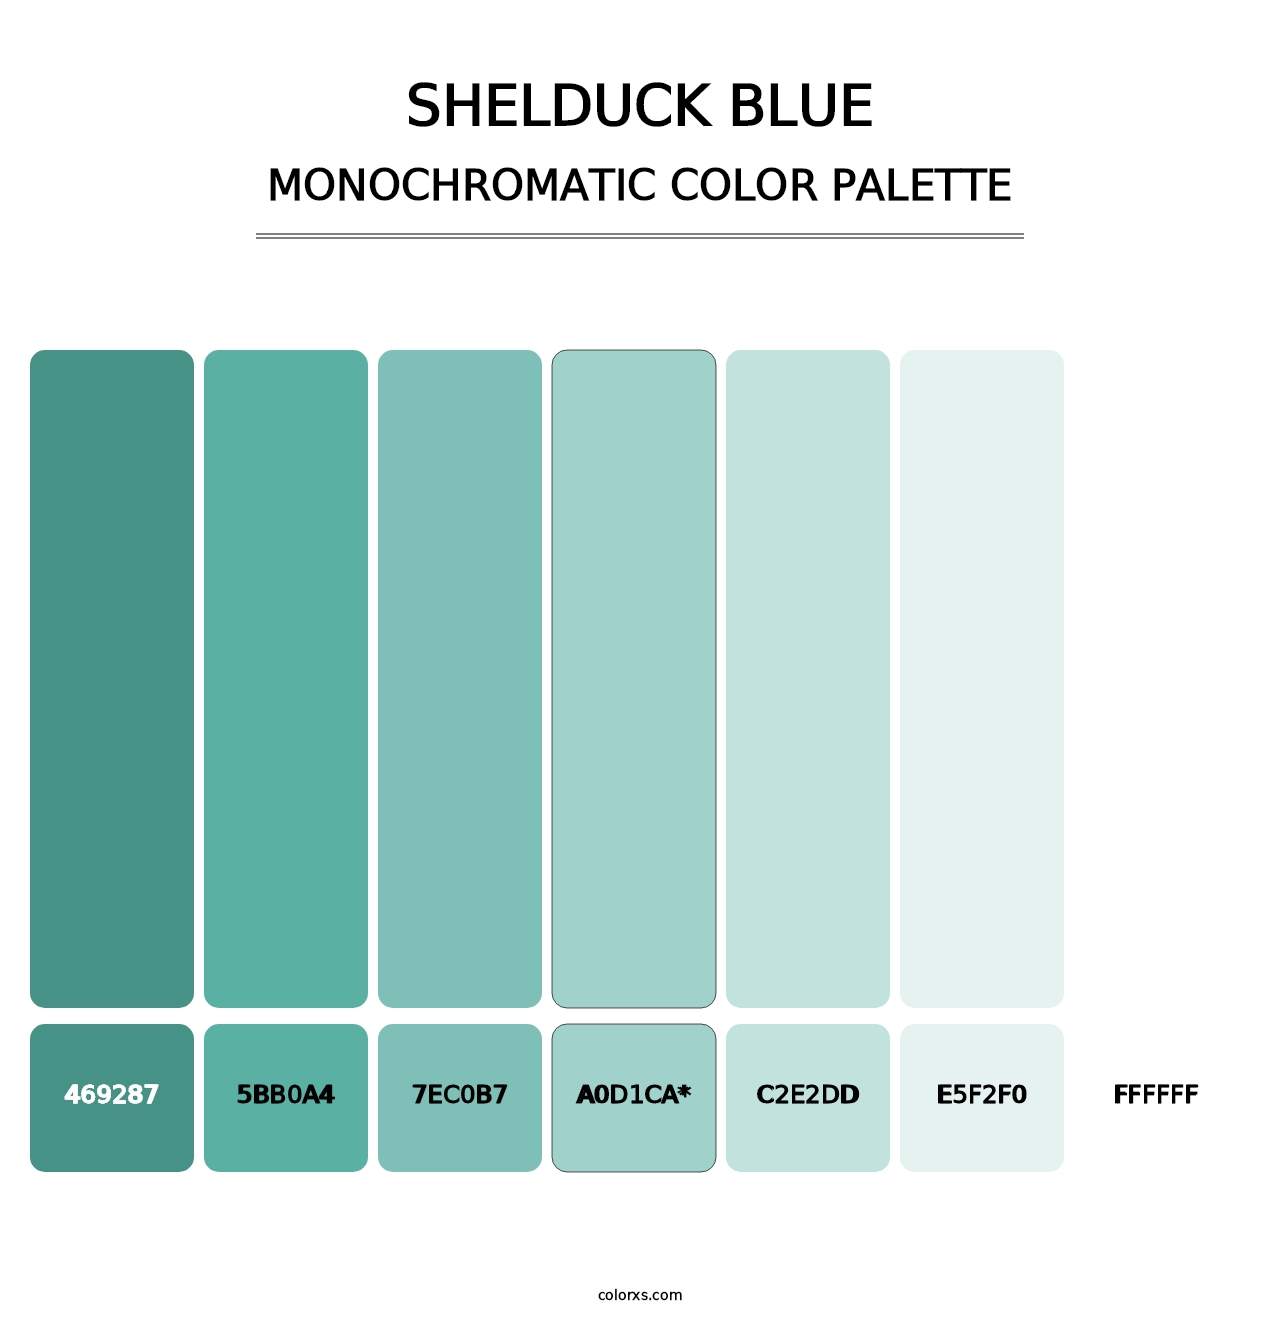 Shelduck Blue - Monochromatic Color Palette